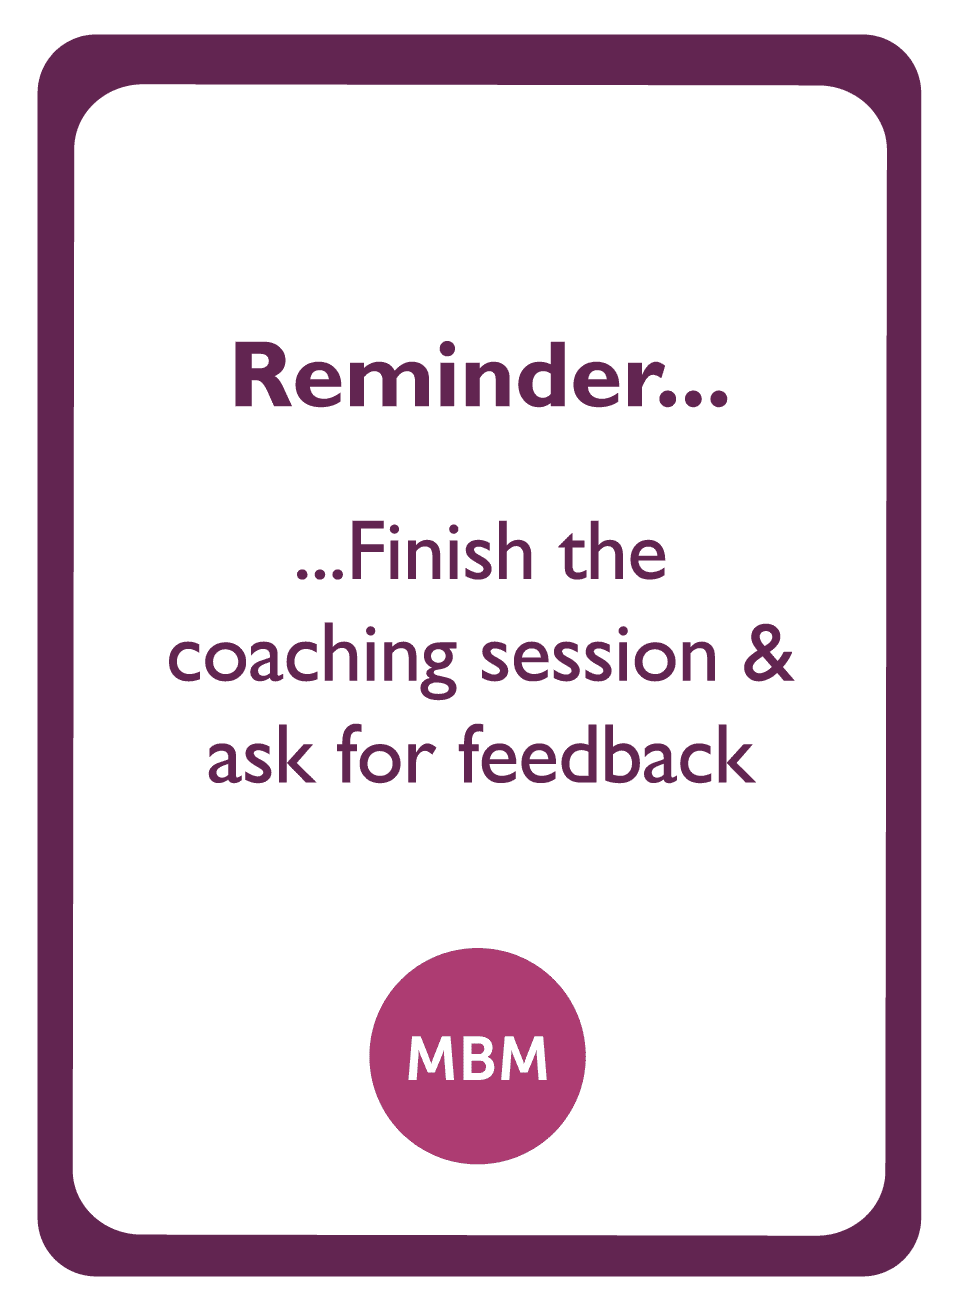 Coaching card titled Reminder